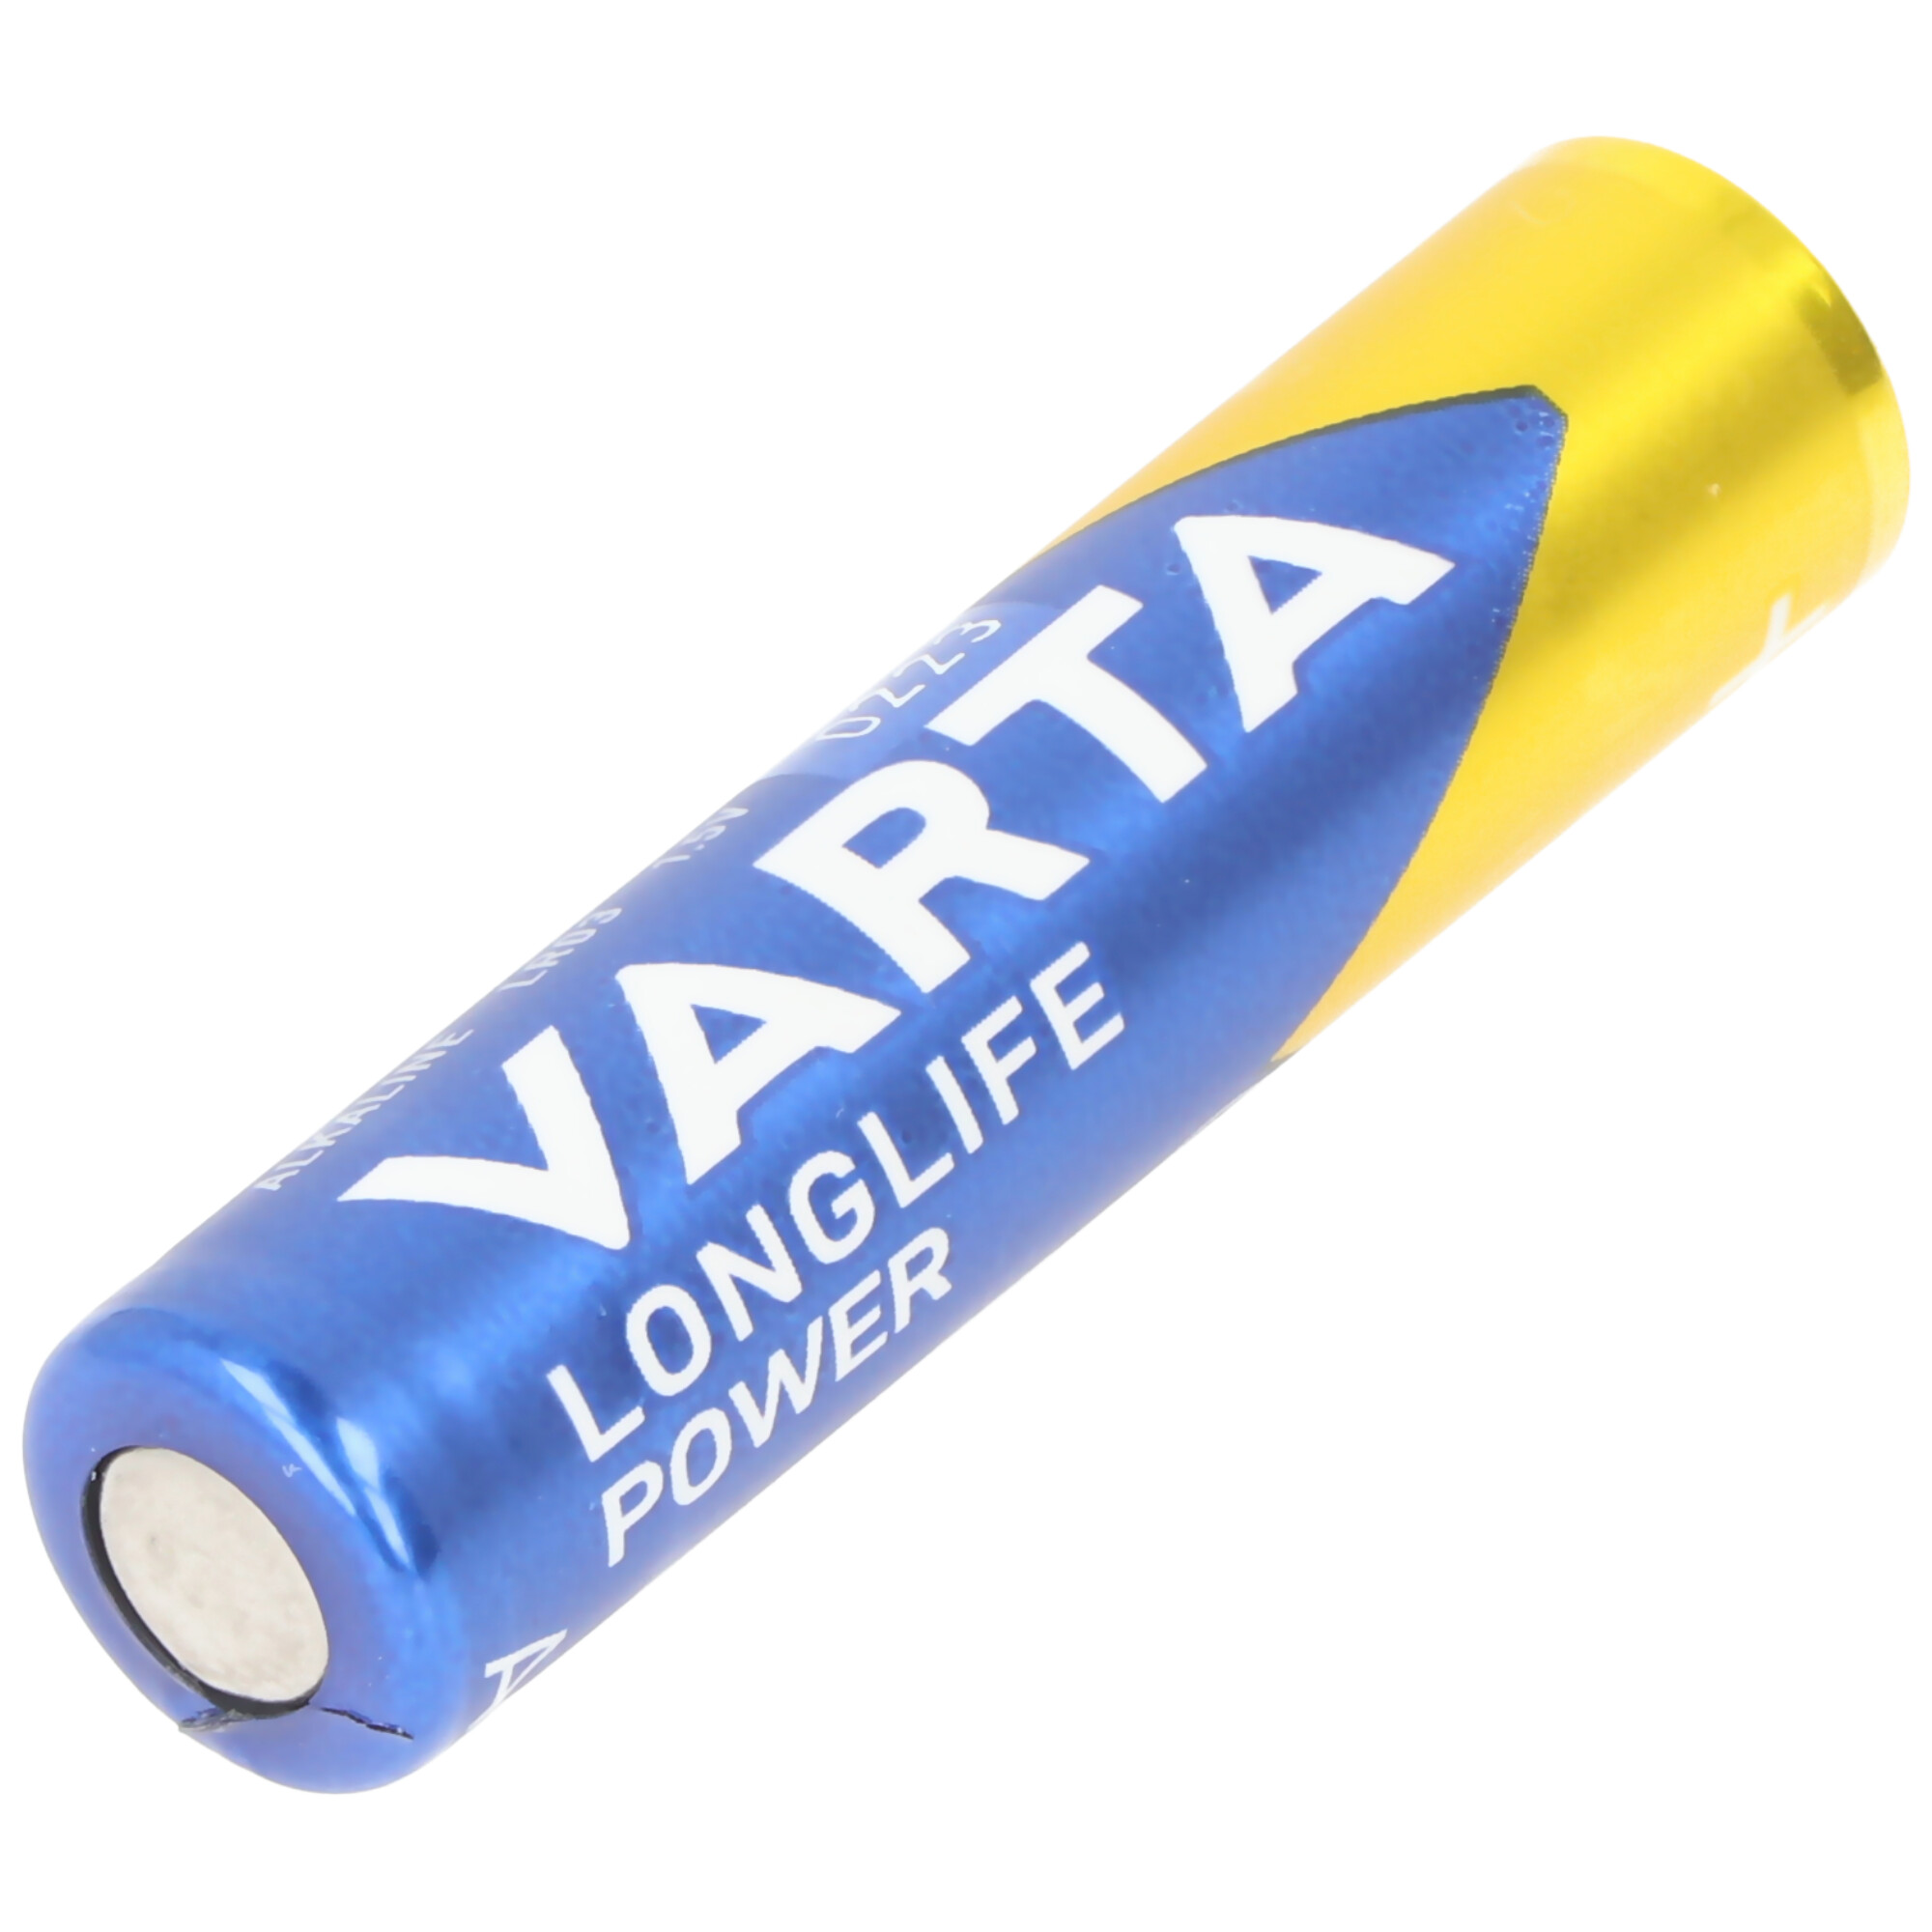 Blister Batterie | | Taschenlampe 1x Alkaline Retail 12lm, LED Akkushop Light, LEDs,Taschenlampen, | LED-Taschenlampen Day AAA, inkl. Lichttechnik Varta Key Chain